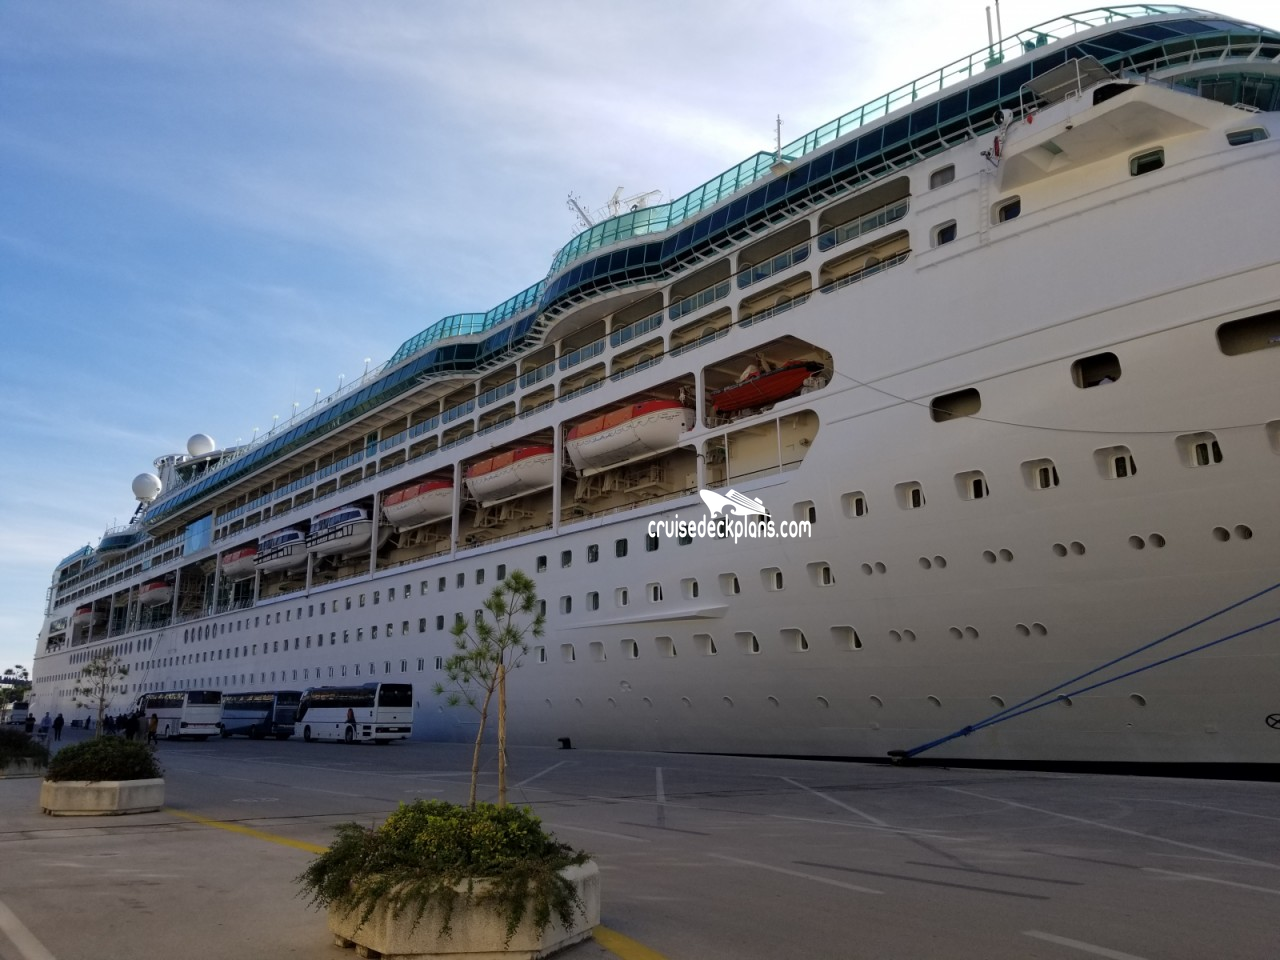 Rhapsody of the Seas Deck 7 Deck Plan Tour